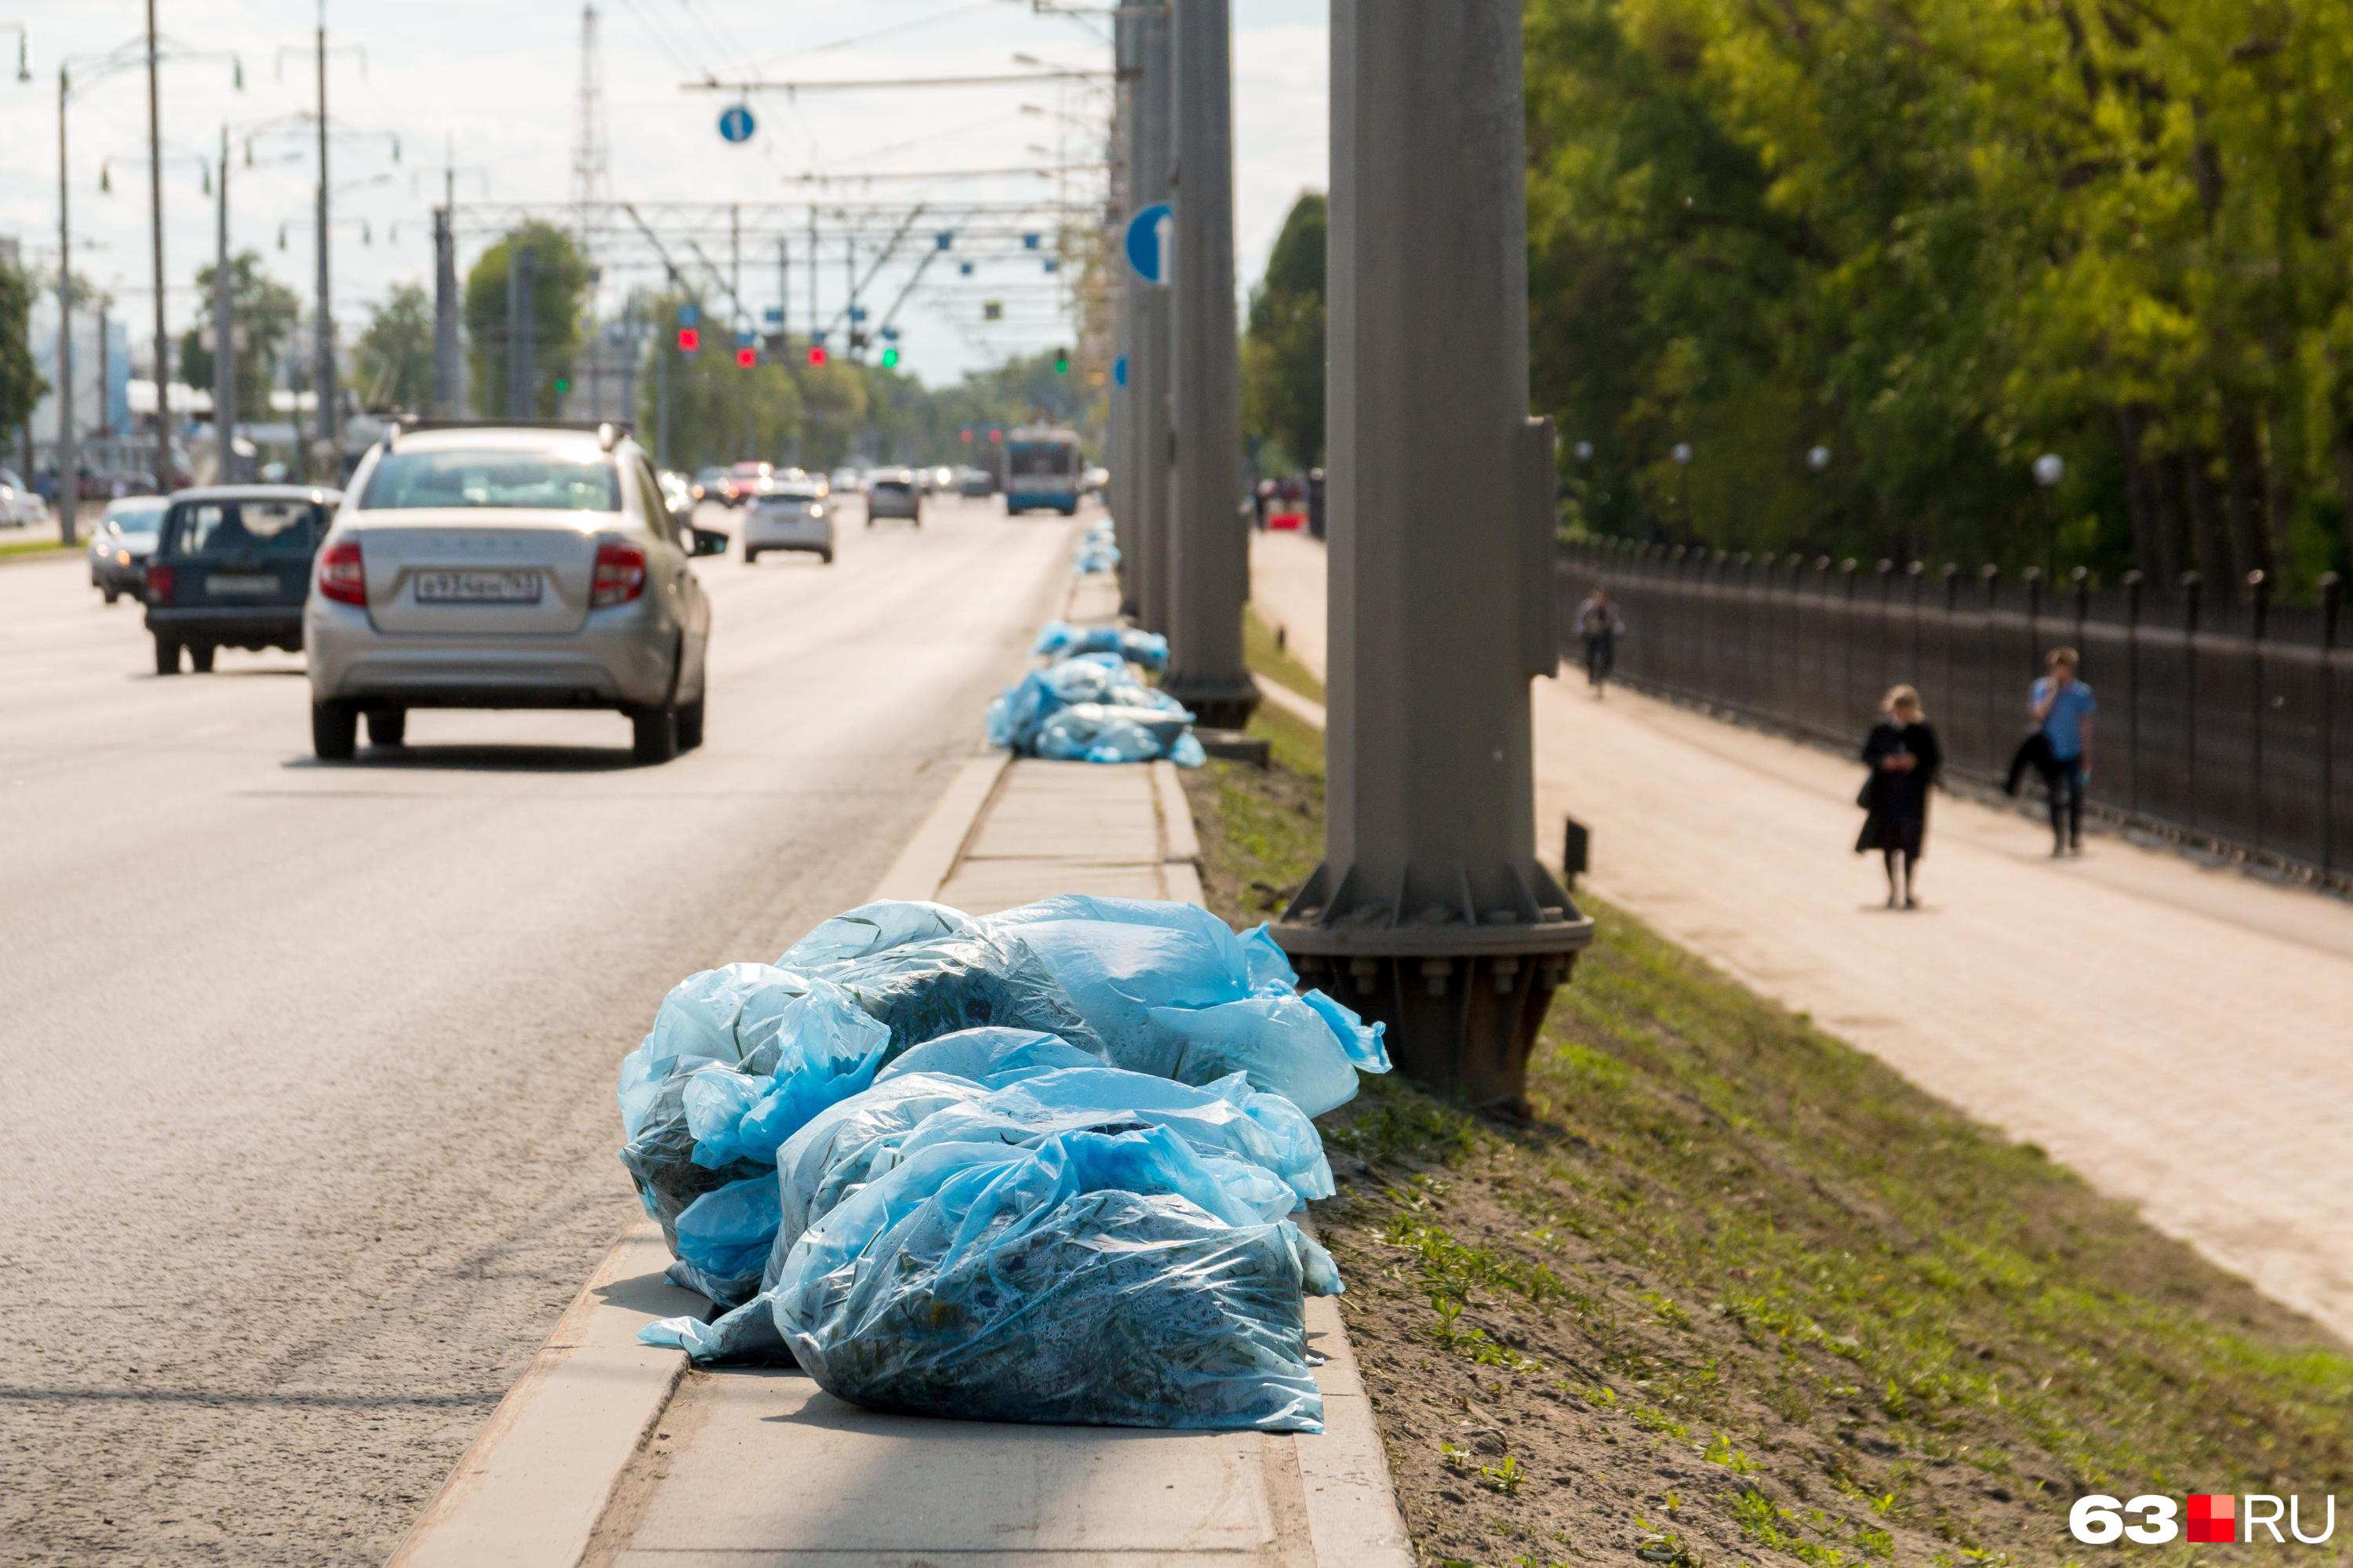 После субботника в Чите вывезли 55 КАМАЗов мешков с мусором. Но горожане жалуются на их обилие